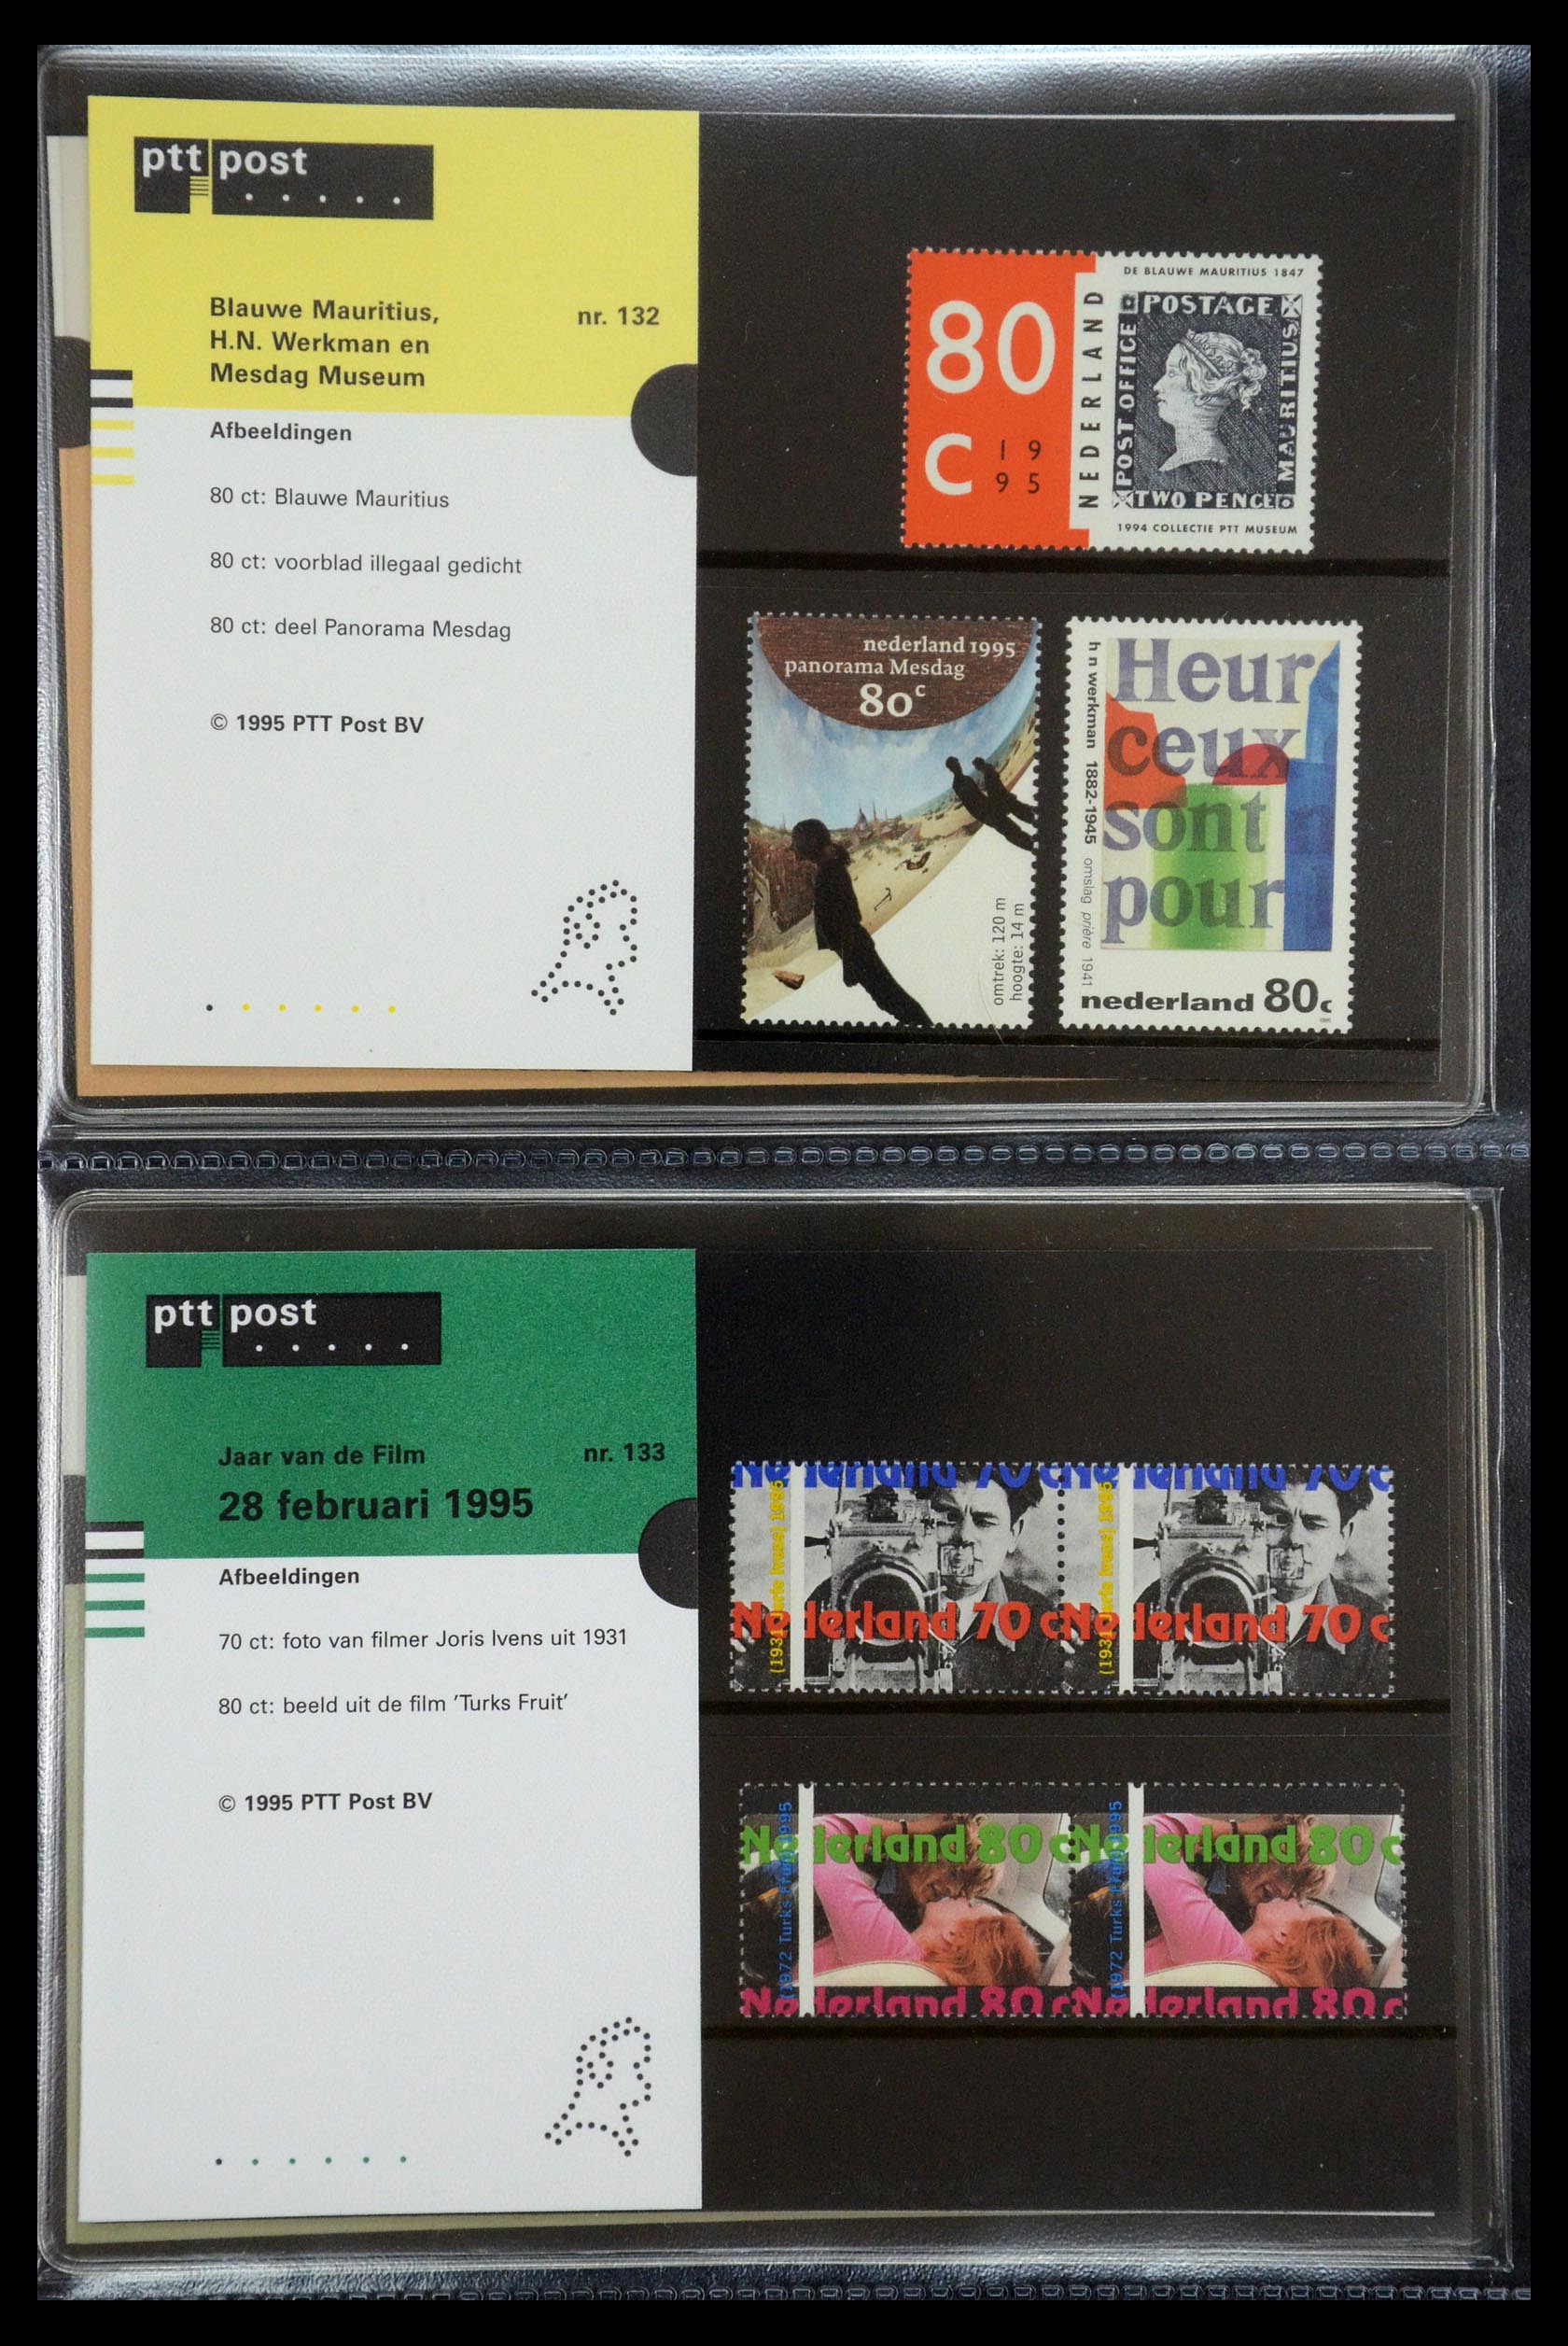 35187 068 - Stamp Collection 35187 Netherlands PTT presentation packs 1982-2019!